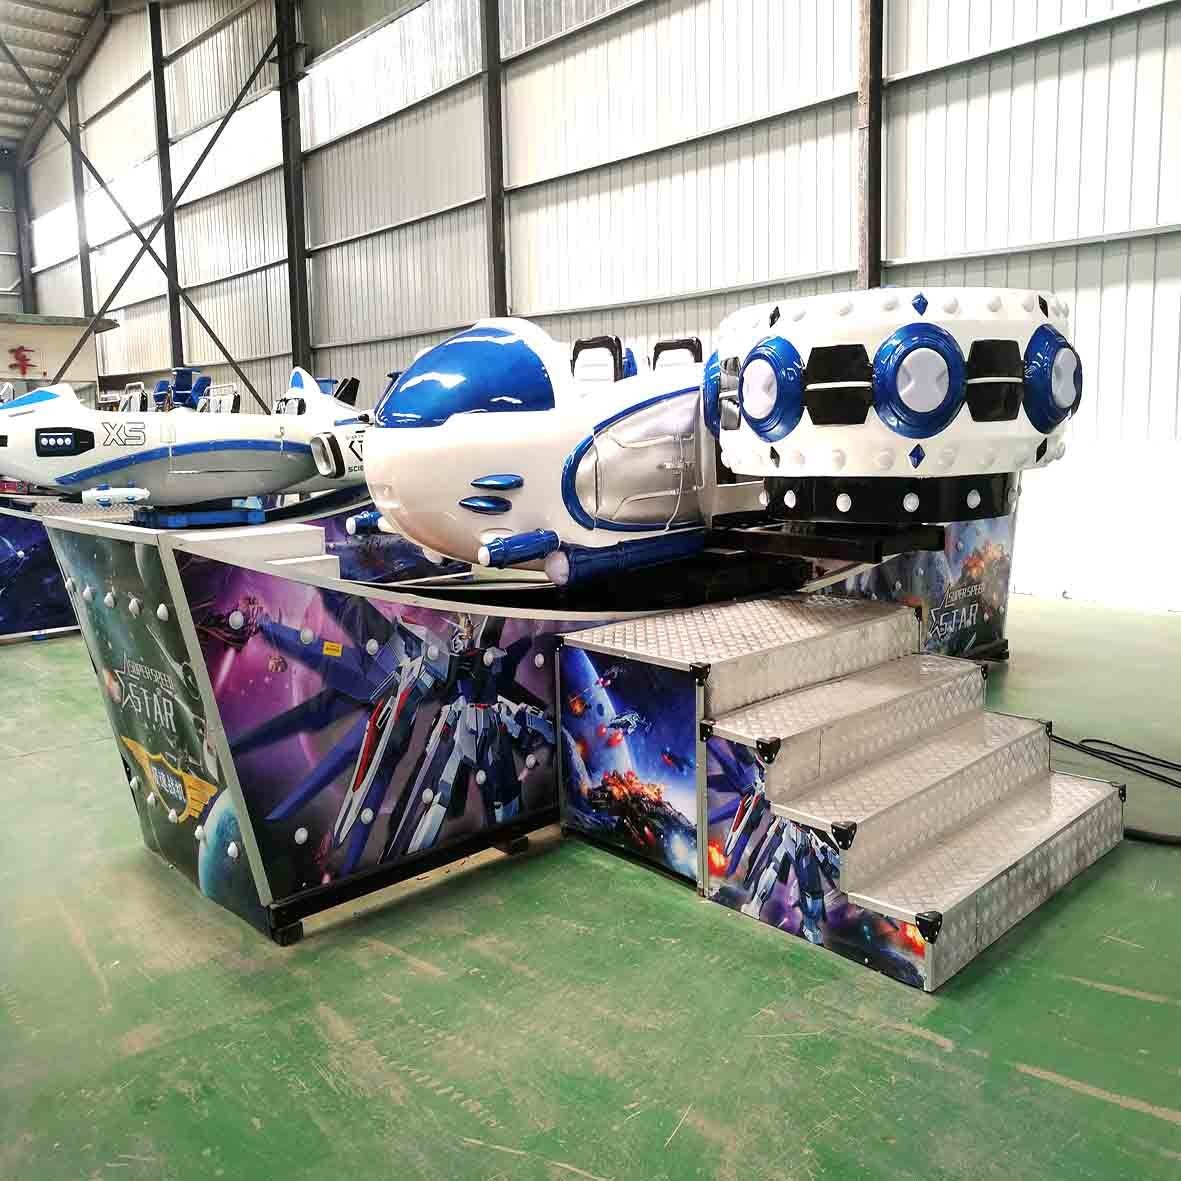 双排座宝马飞船游乐设备   户外雷霆战机参数  好玩的极速飞船游乐设备图片